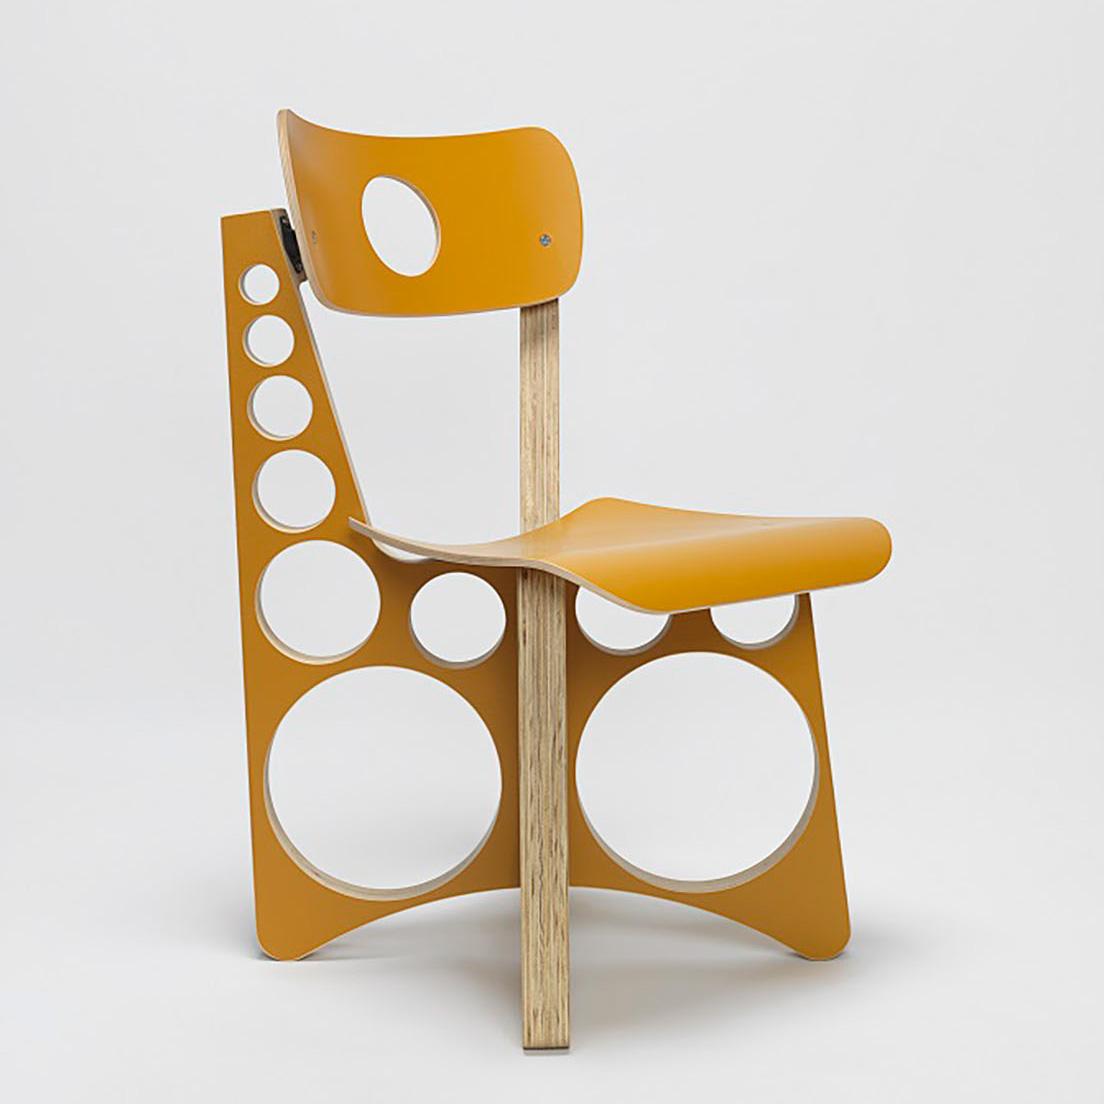 《Shop Chair》「この黄色バージョンは日本限定なんだよ」とトム。　©Tom Sachs
